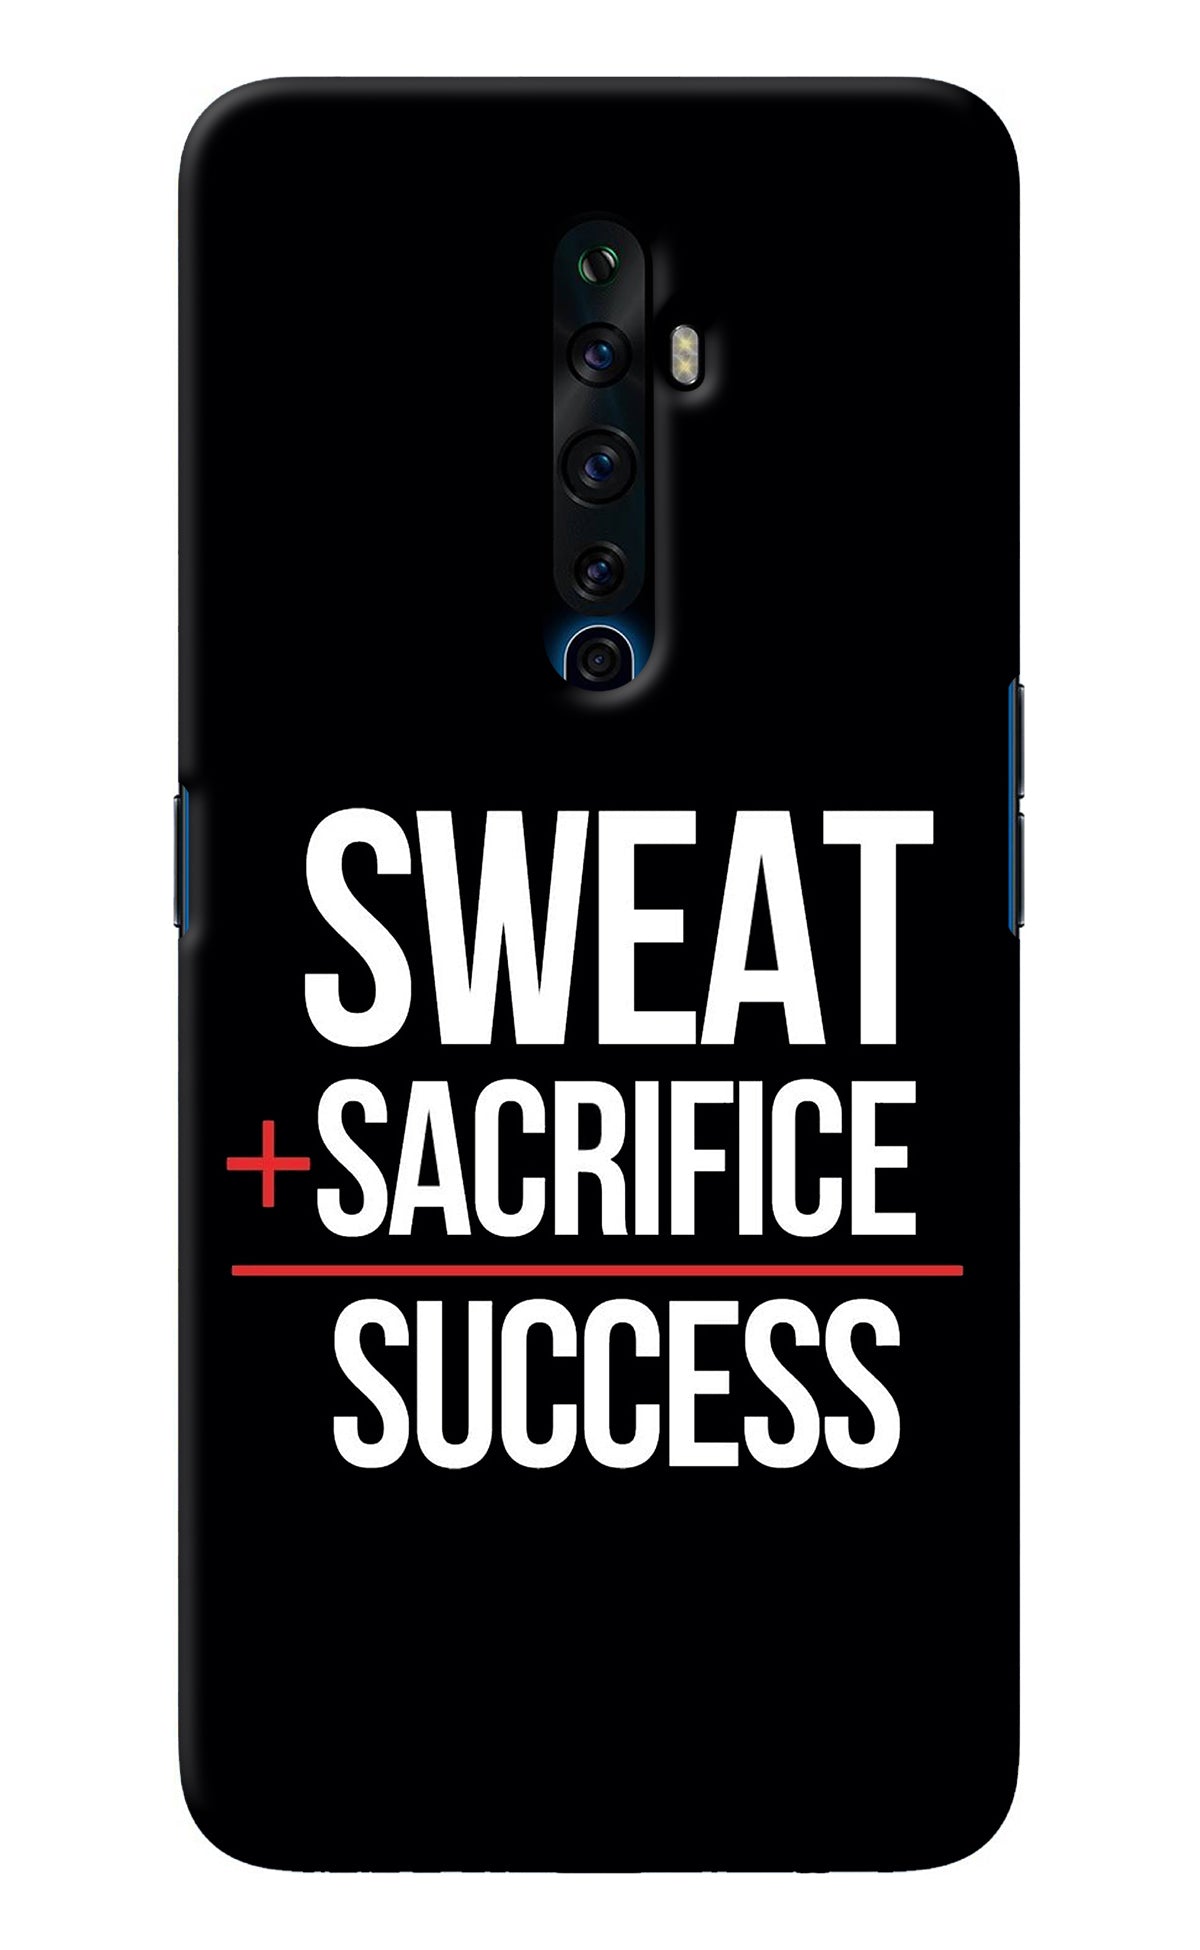 Sweat Sacrifice Success Oppo Reno2 Z Back Cover